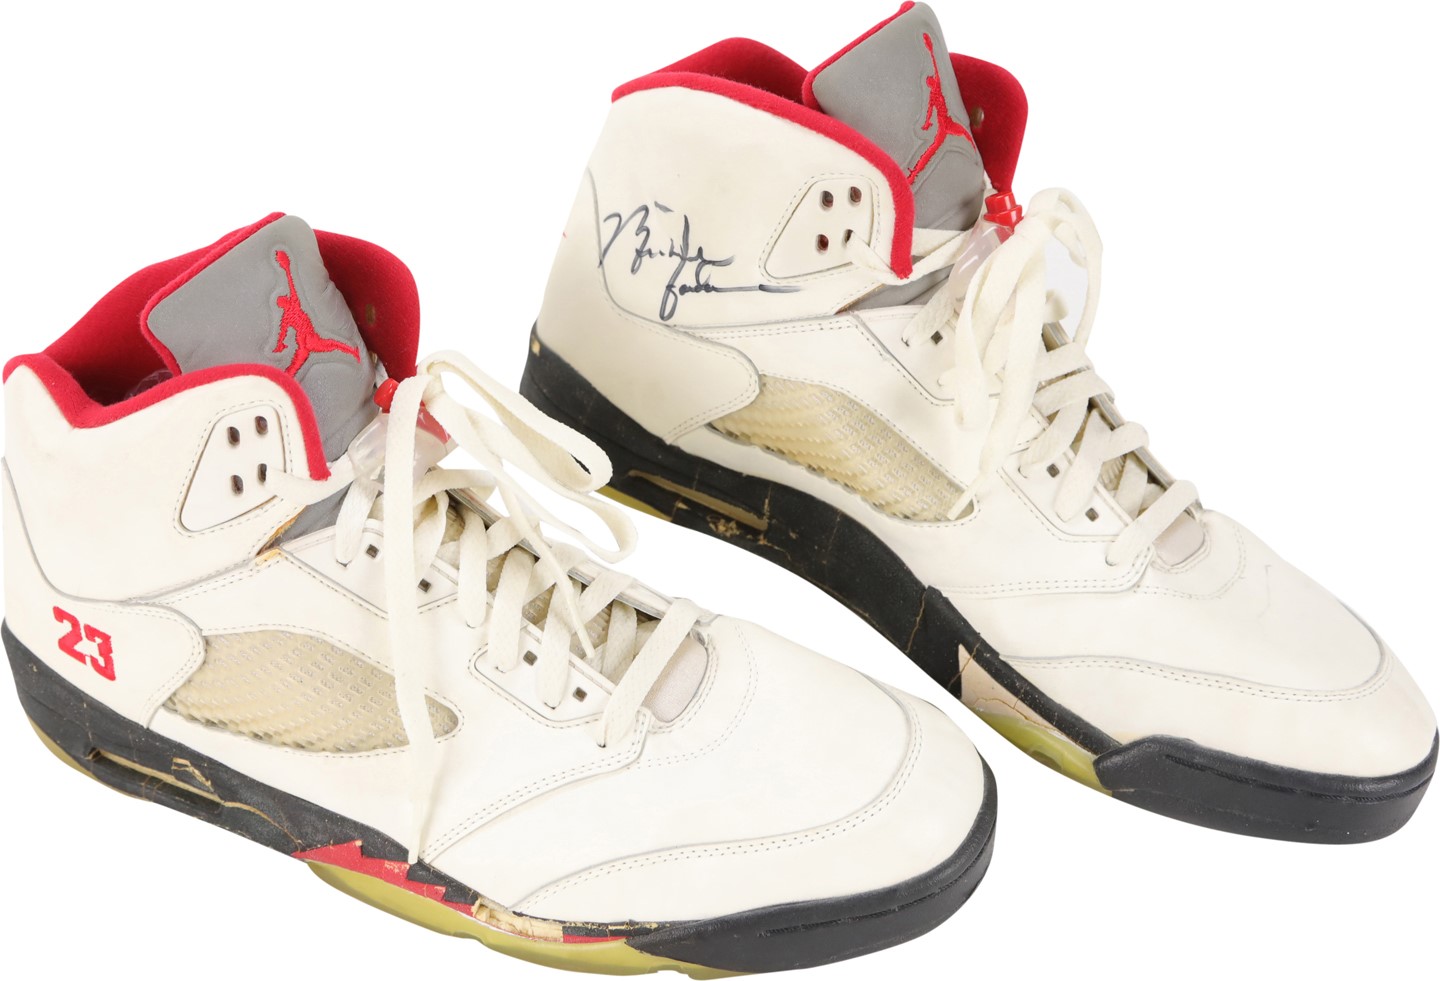 - Circa 1989 Michael Jordan Chicago Bulls Signed Game Worn Sneakers